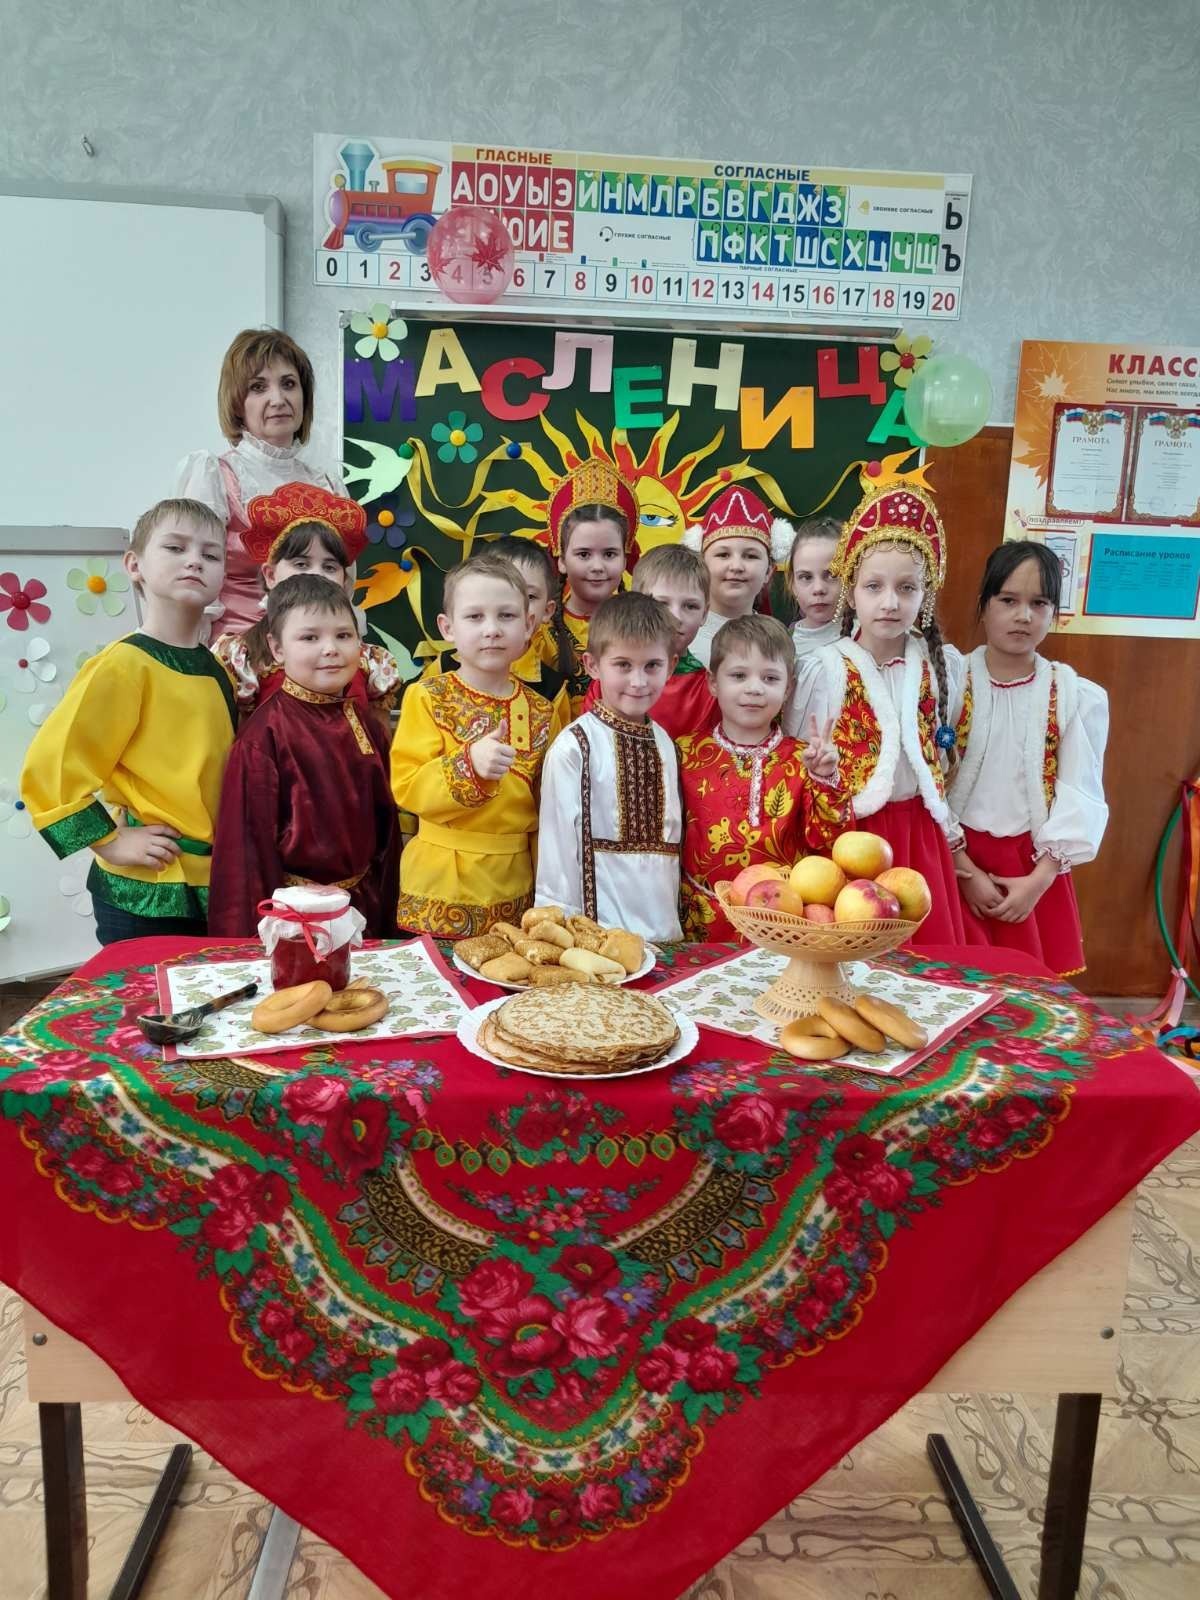 Масленица - один из самых весёлых праздников в году, который отмечается по всей России..